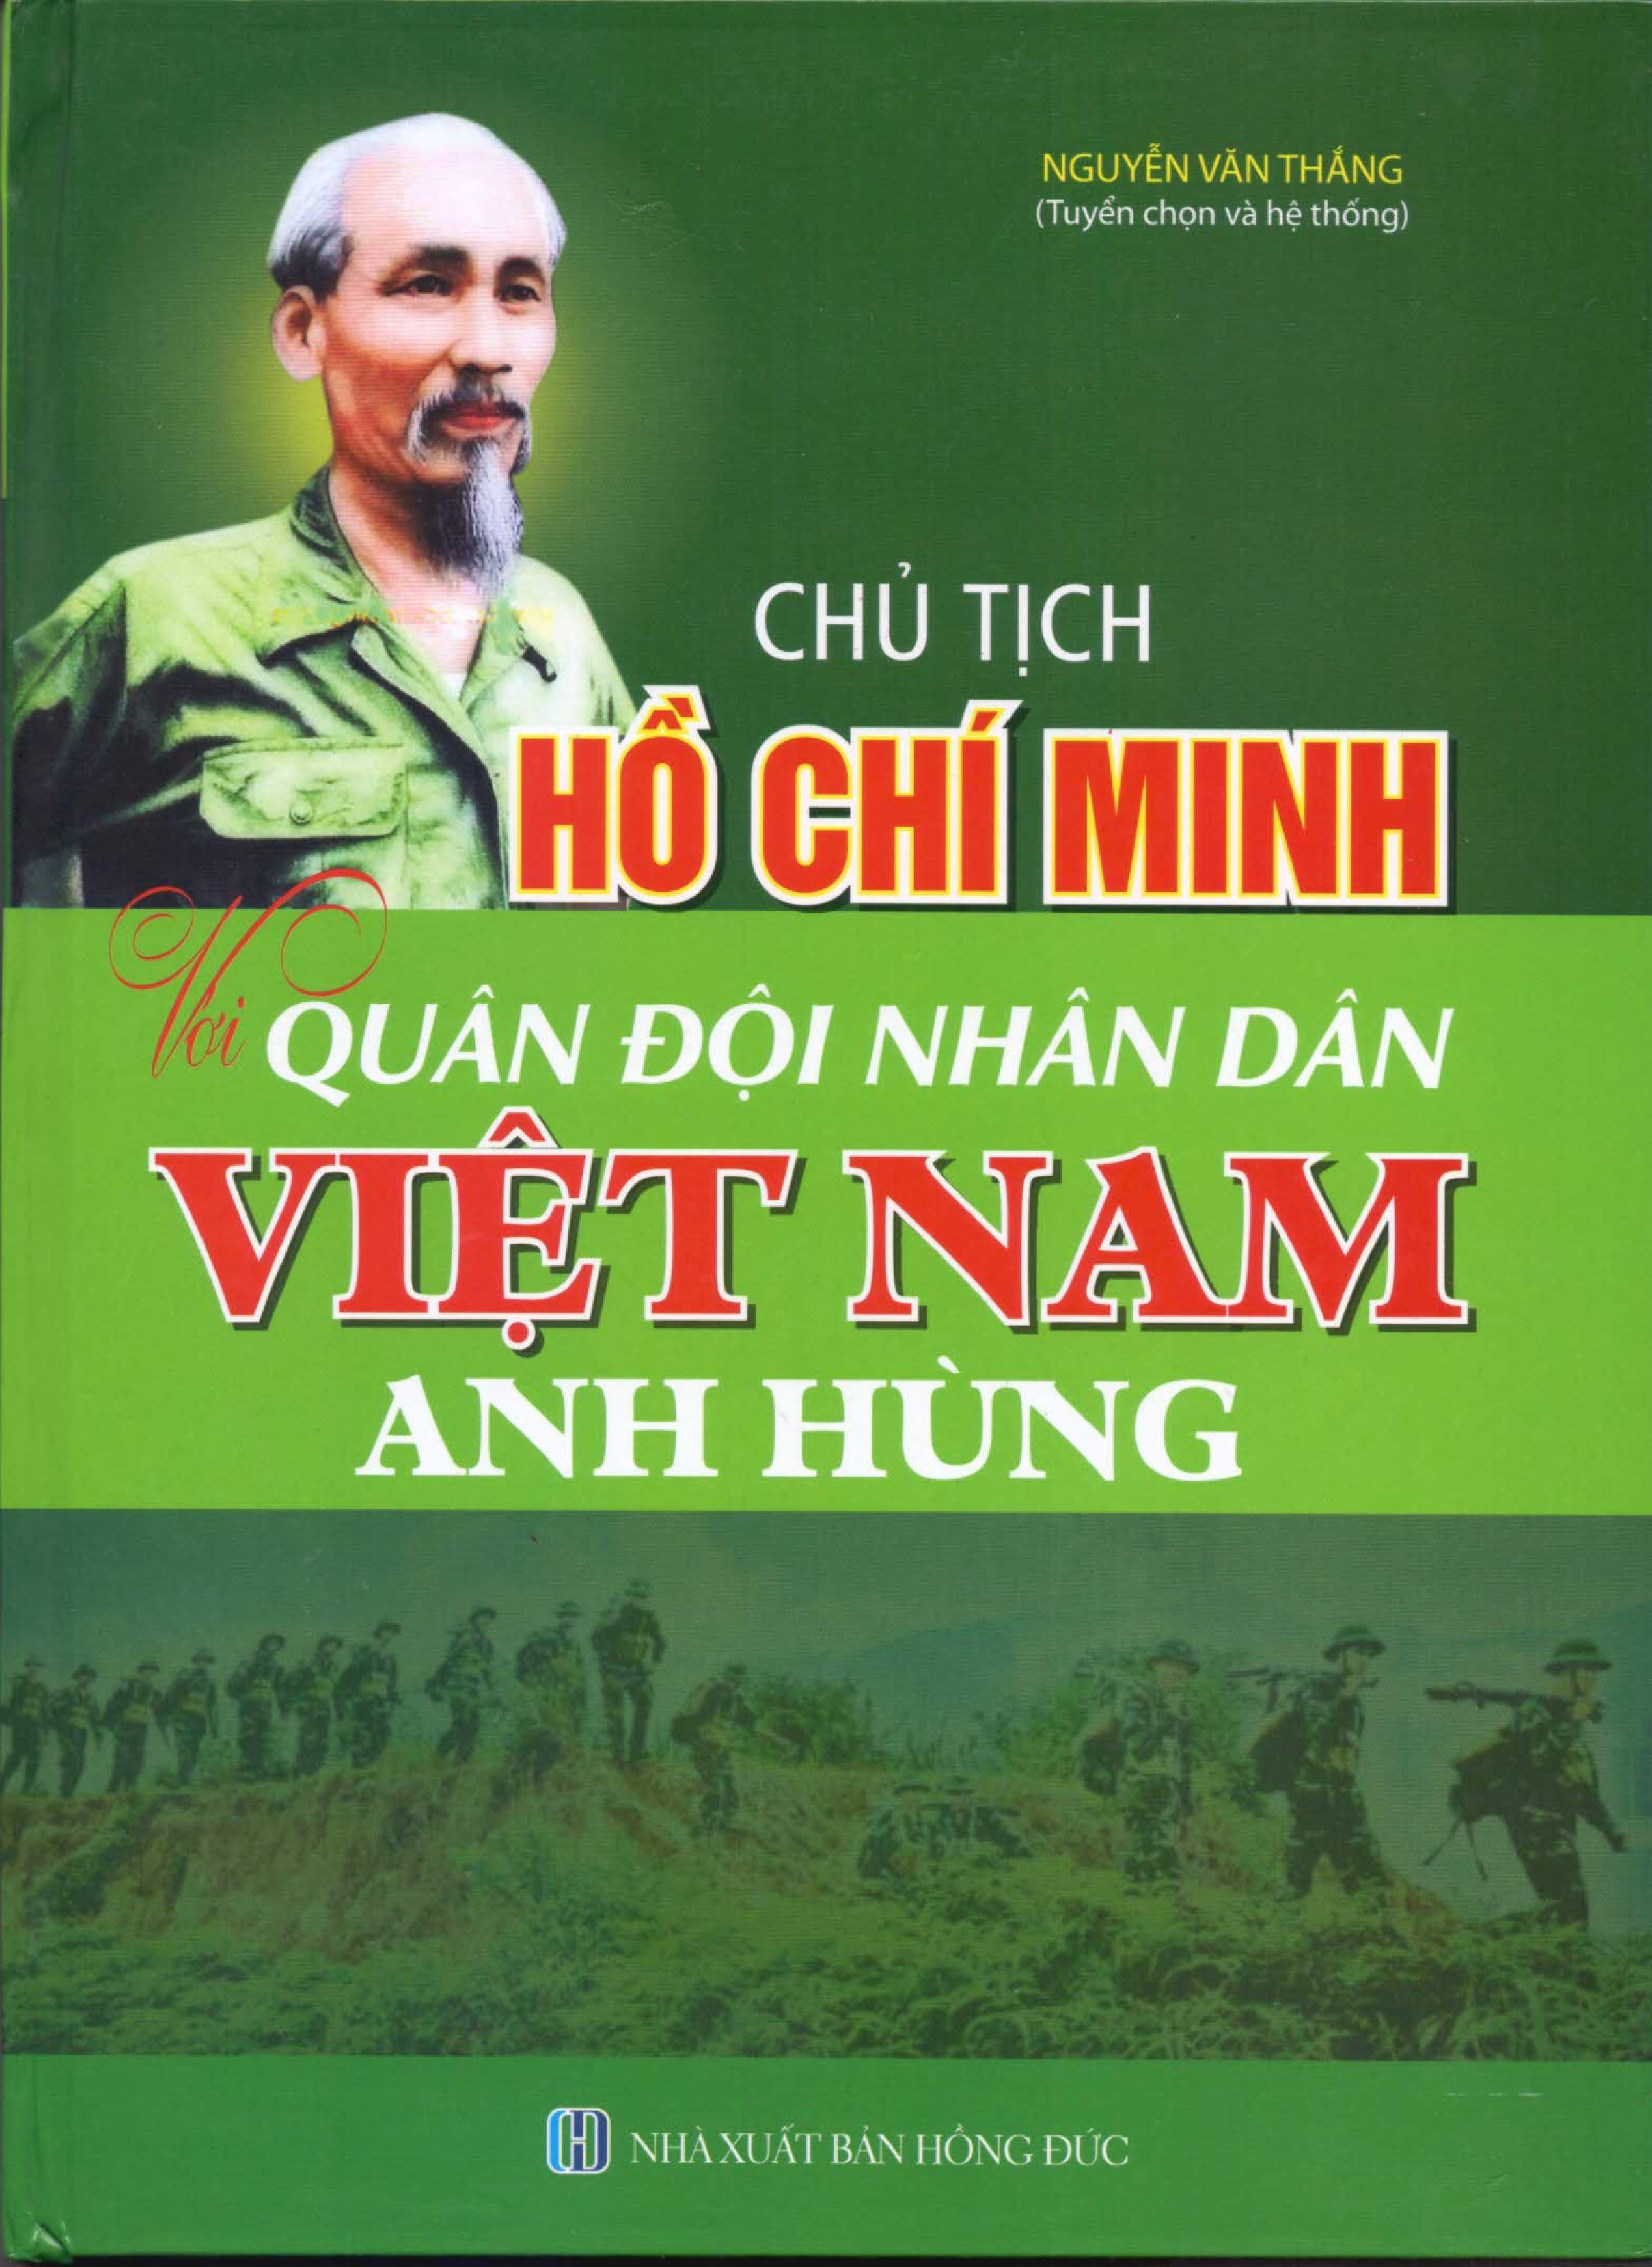 Chủ Tịch Hồ Chí Minh Với Quân Đội Nhân Dân Việt Nam Anh Hùng